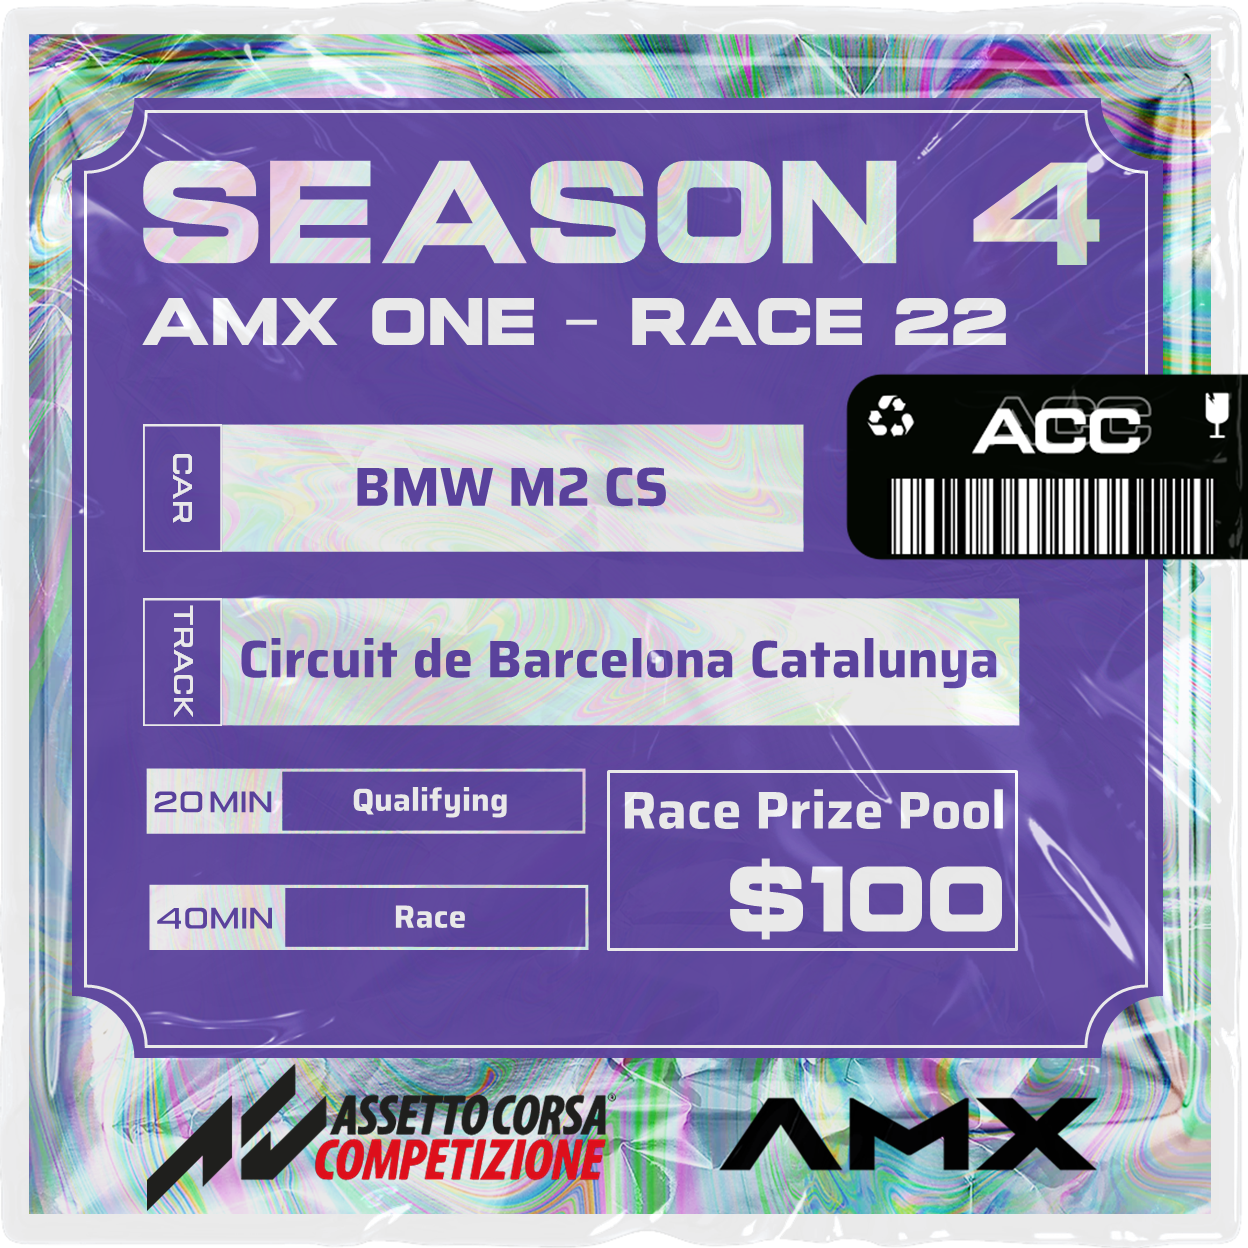 AMX ONE - RACE 22 [3/24 - 5:50 PM GMT]